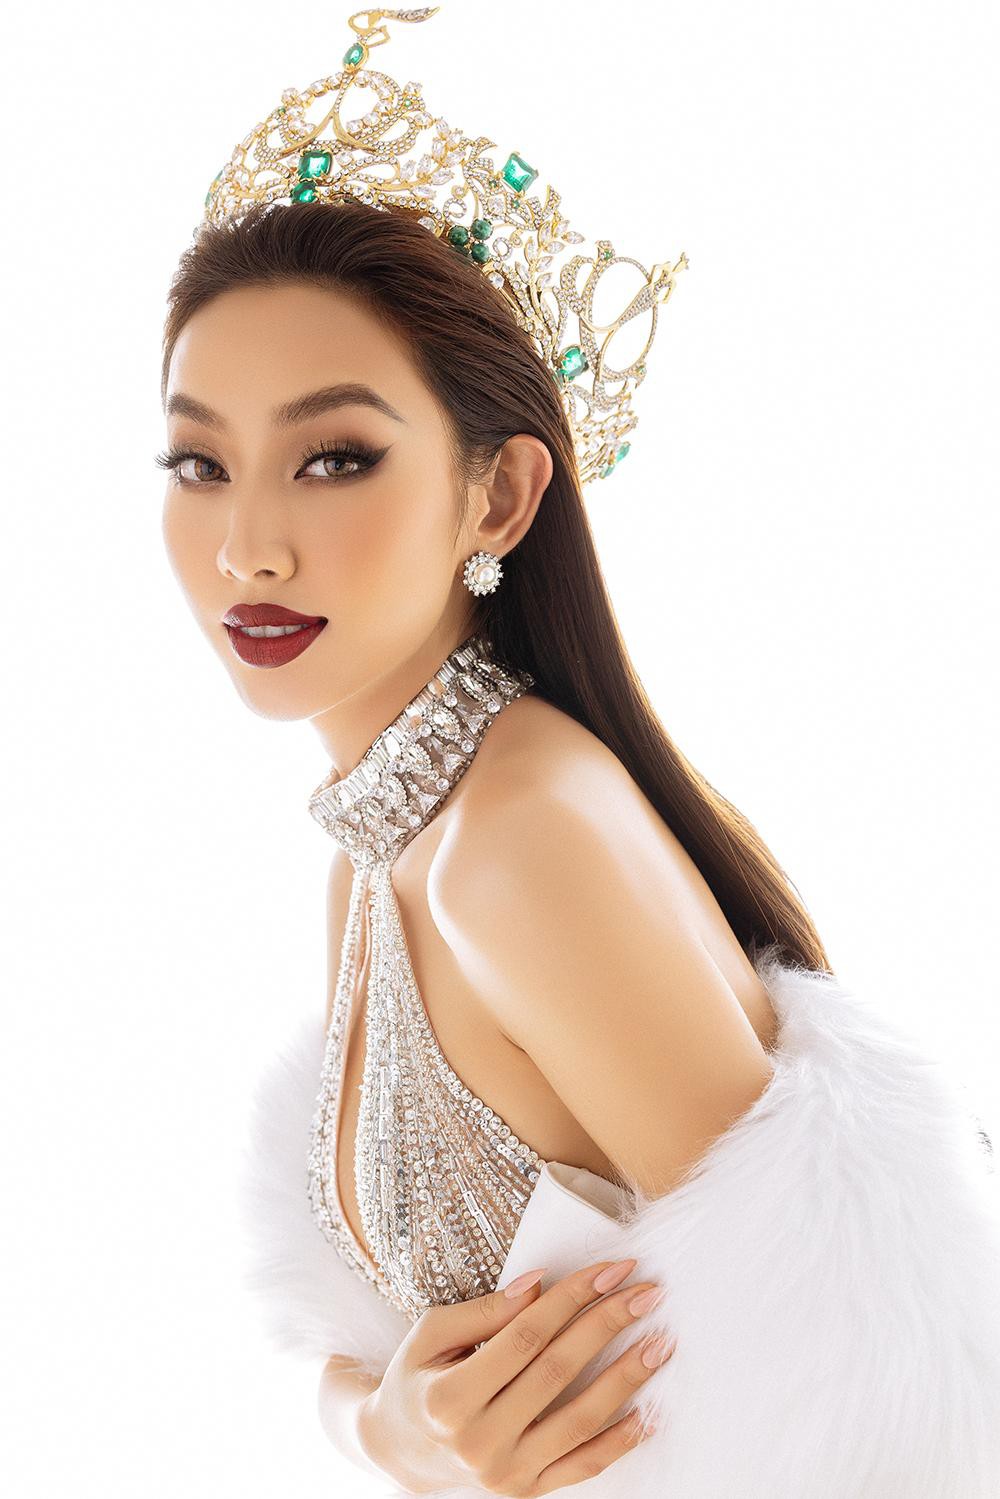 Thuỳ Tiên diện thiết kế khoét vòng 1 nóng bỏng trong bộ ảnh kỷ niệm 6 tháng đăng quang Miss Grand - Ảnh 3.